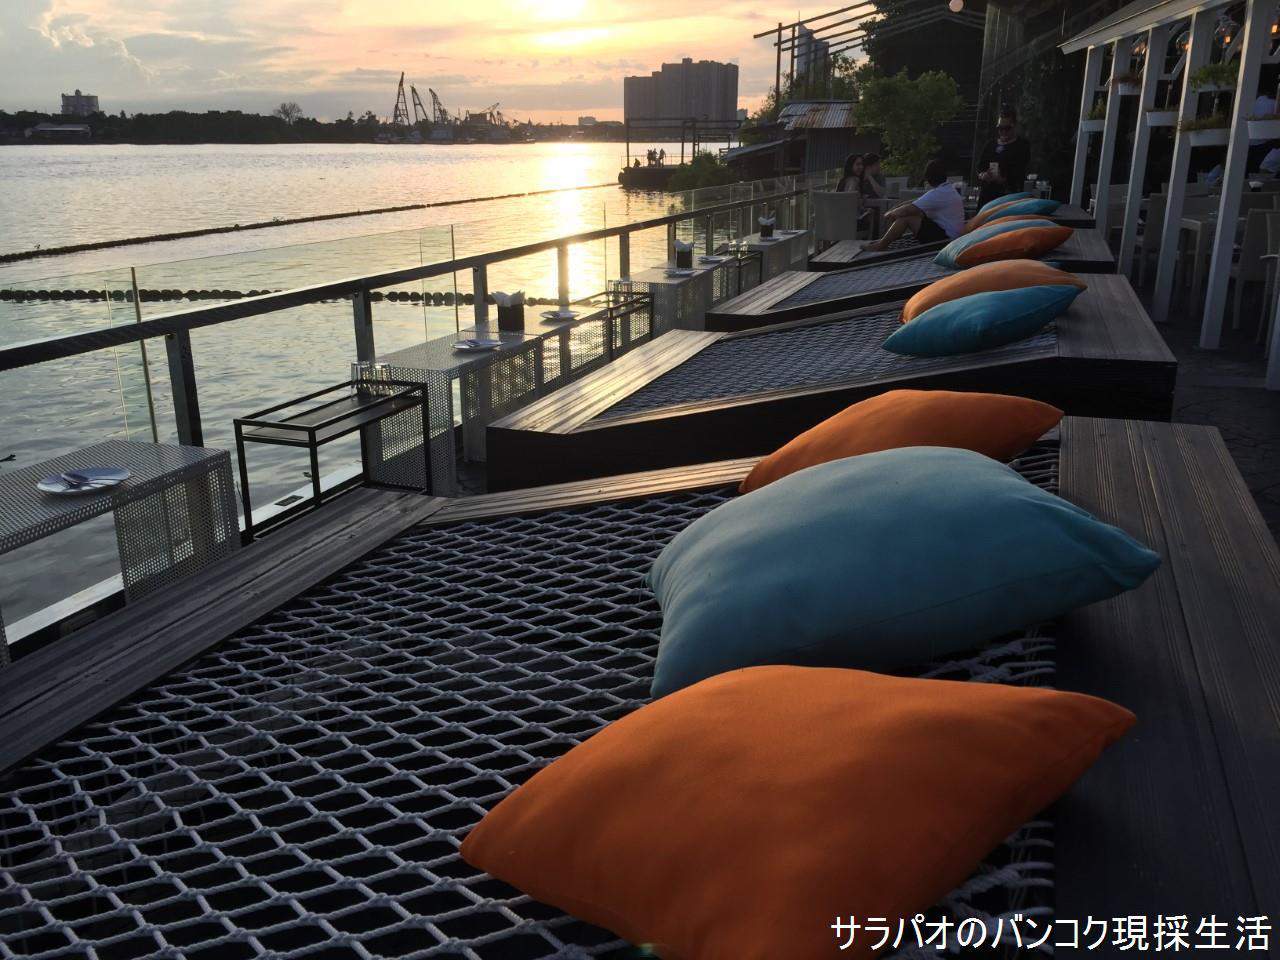 ブリ・タラで川に沈む夕日を見ながら夕食 near BRT ワット・パリワート駅